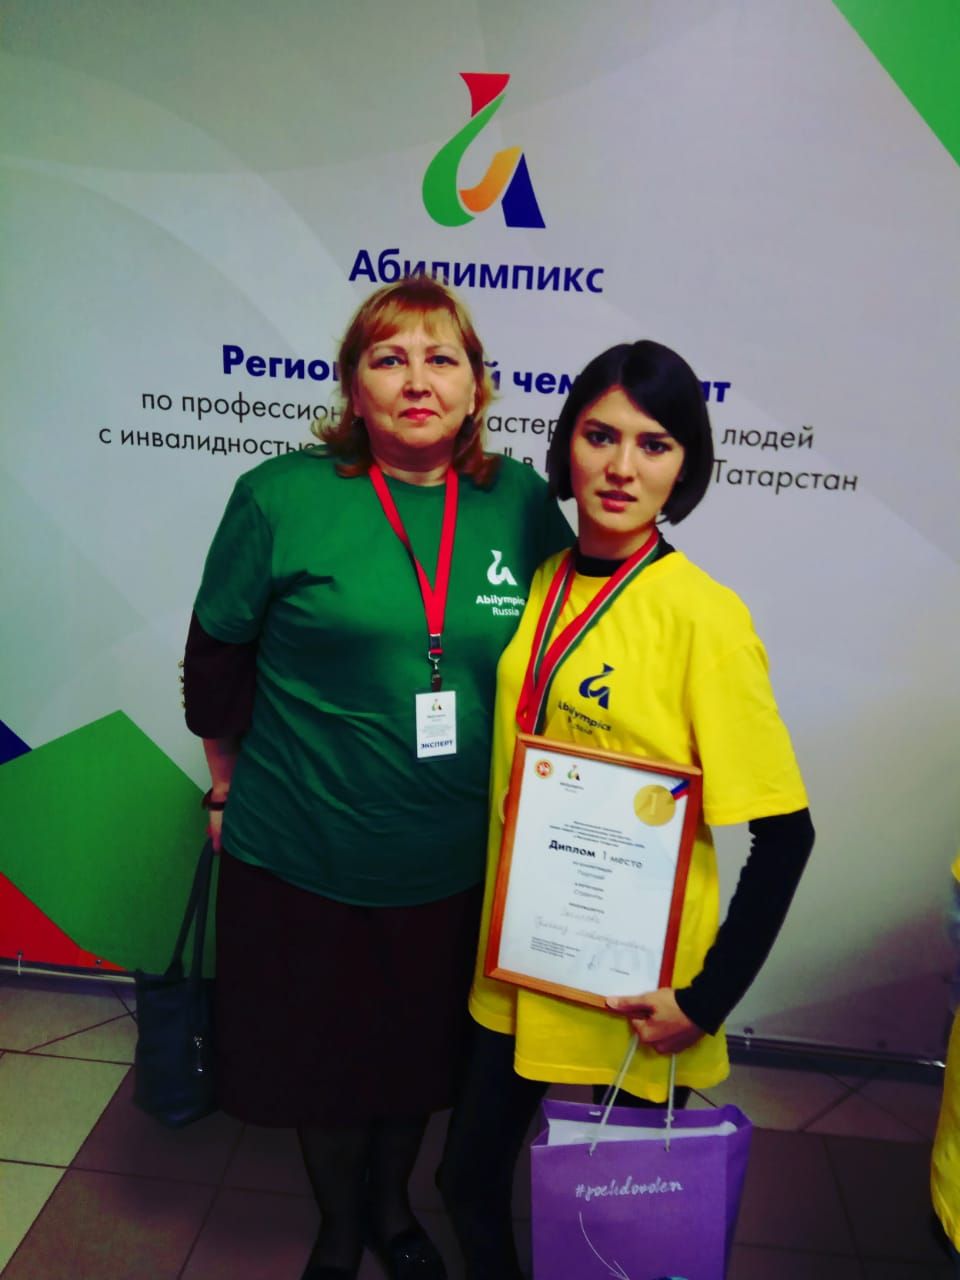 Гульназ Сагирова, наша землячка, восхитила многих, приняв участие в конкурсе «Жемчужина Татарстана».